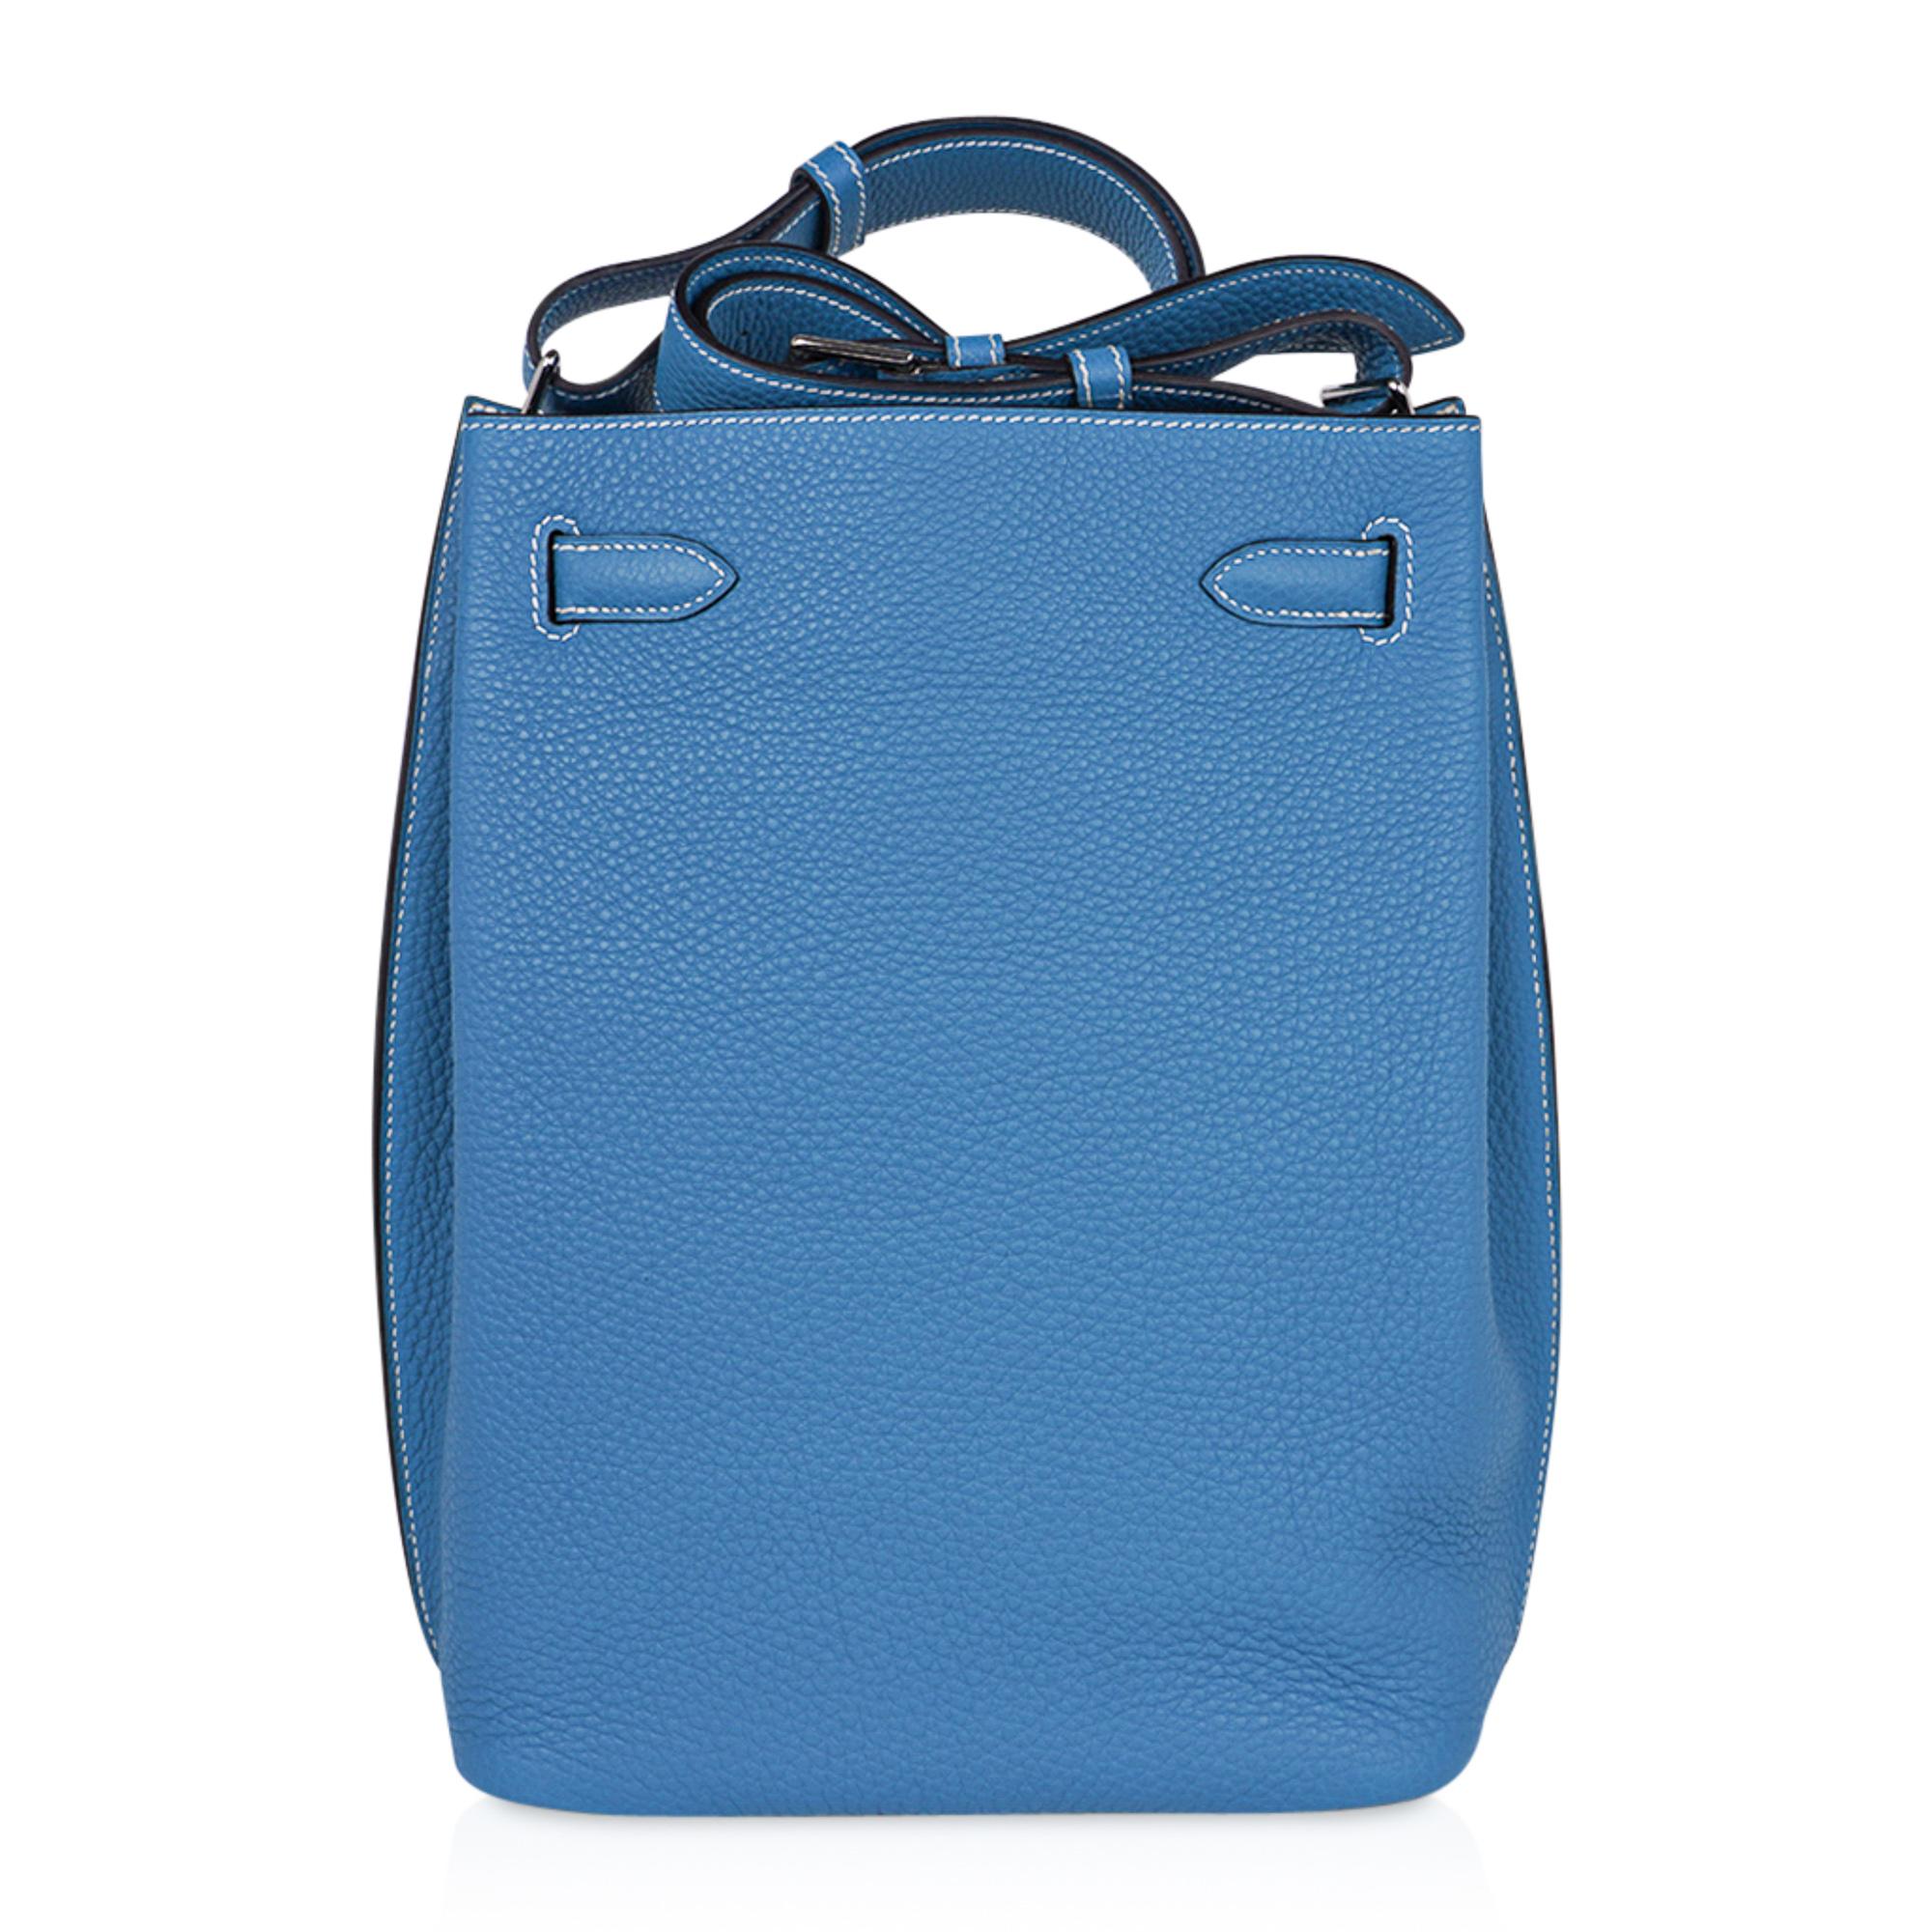 Hermes  So Kelly 26 Bag Blue Jean Tote Shoulder bag 1